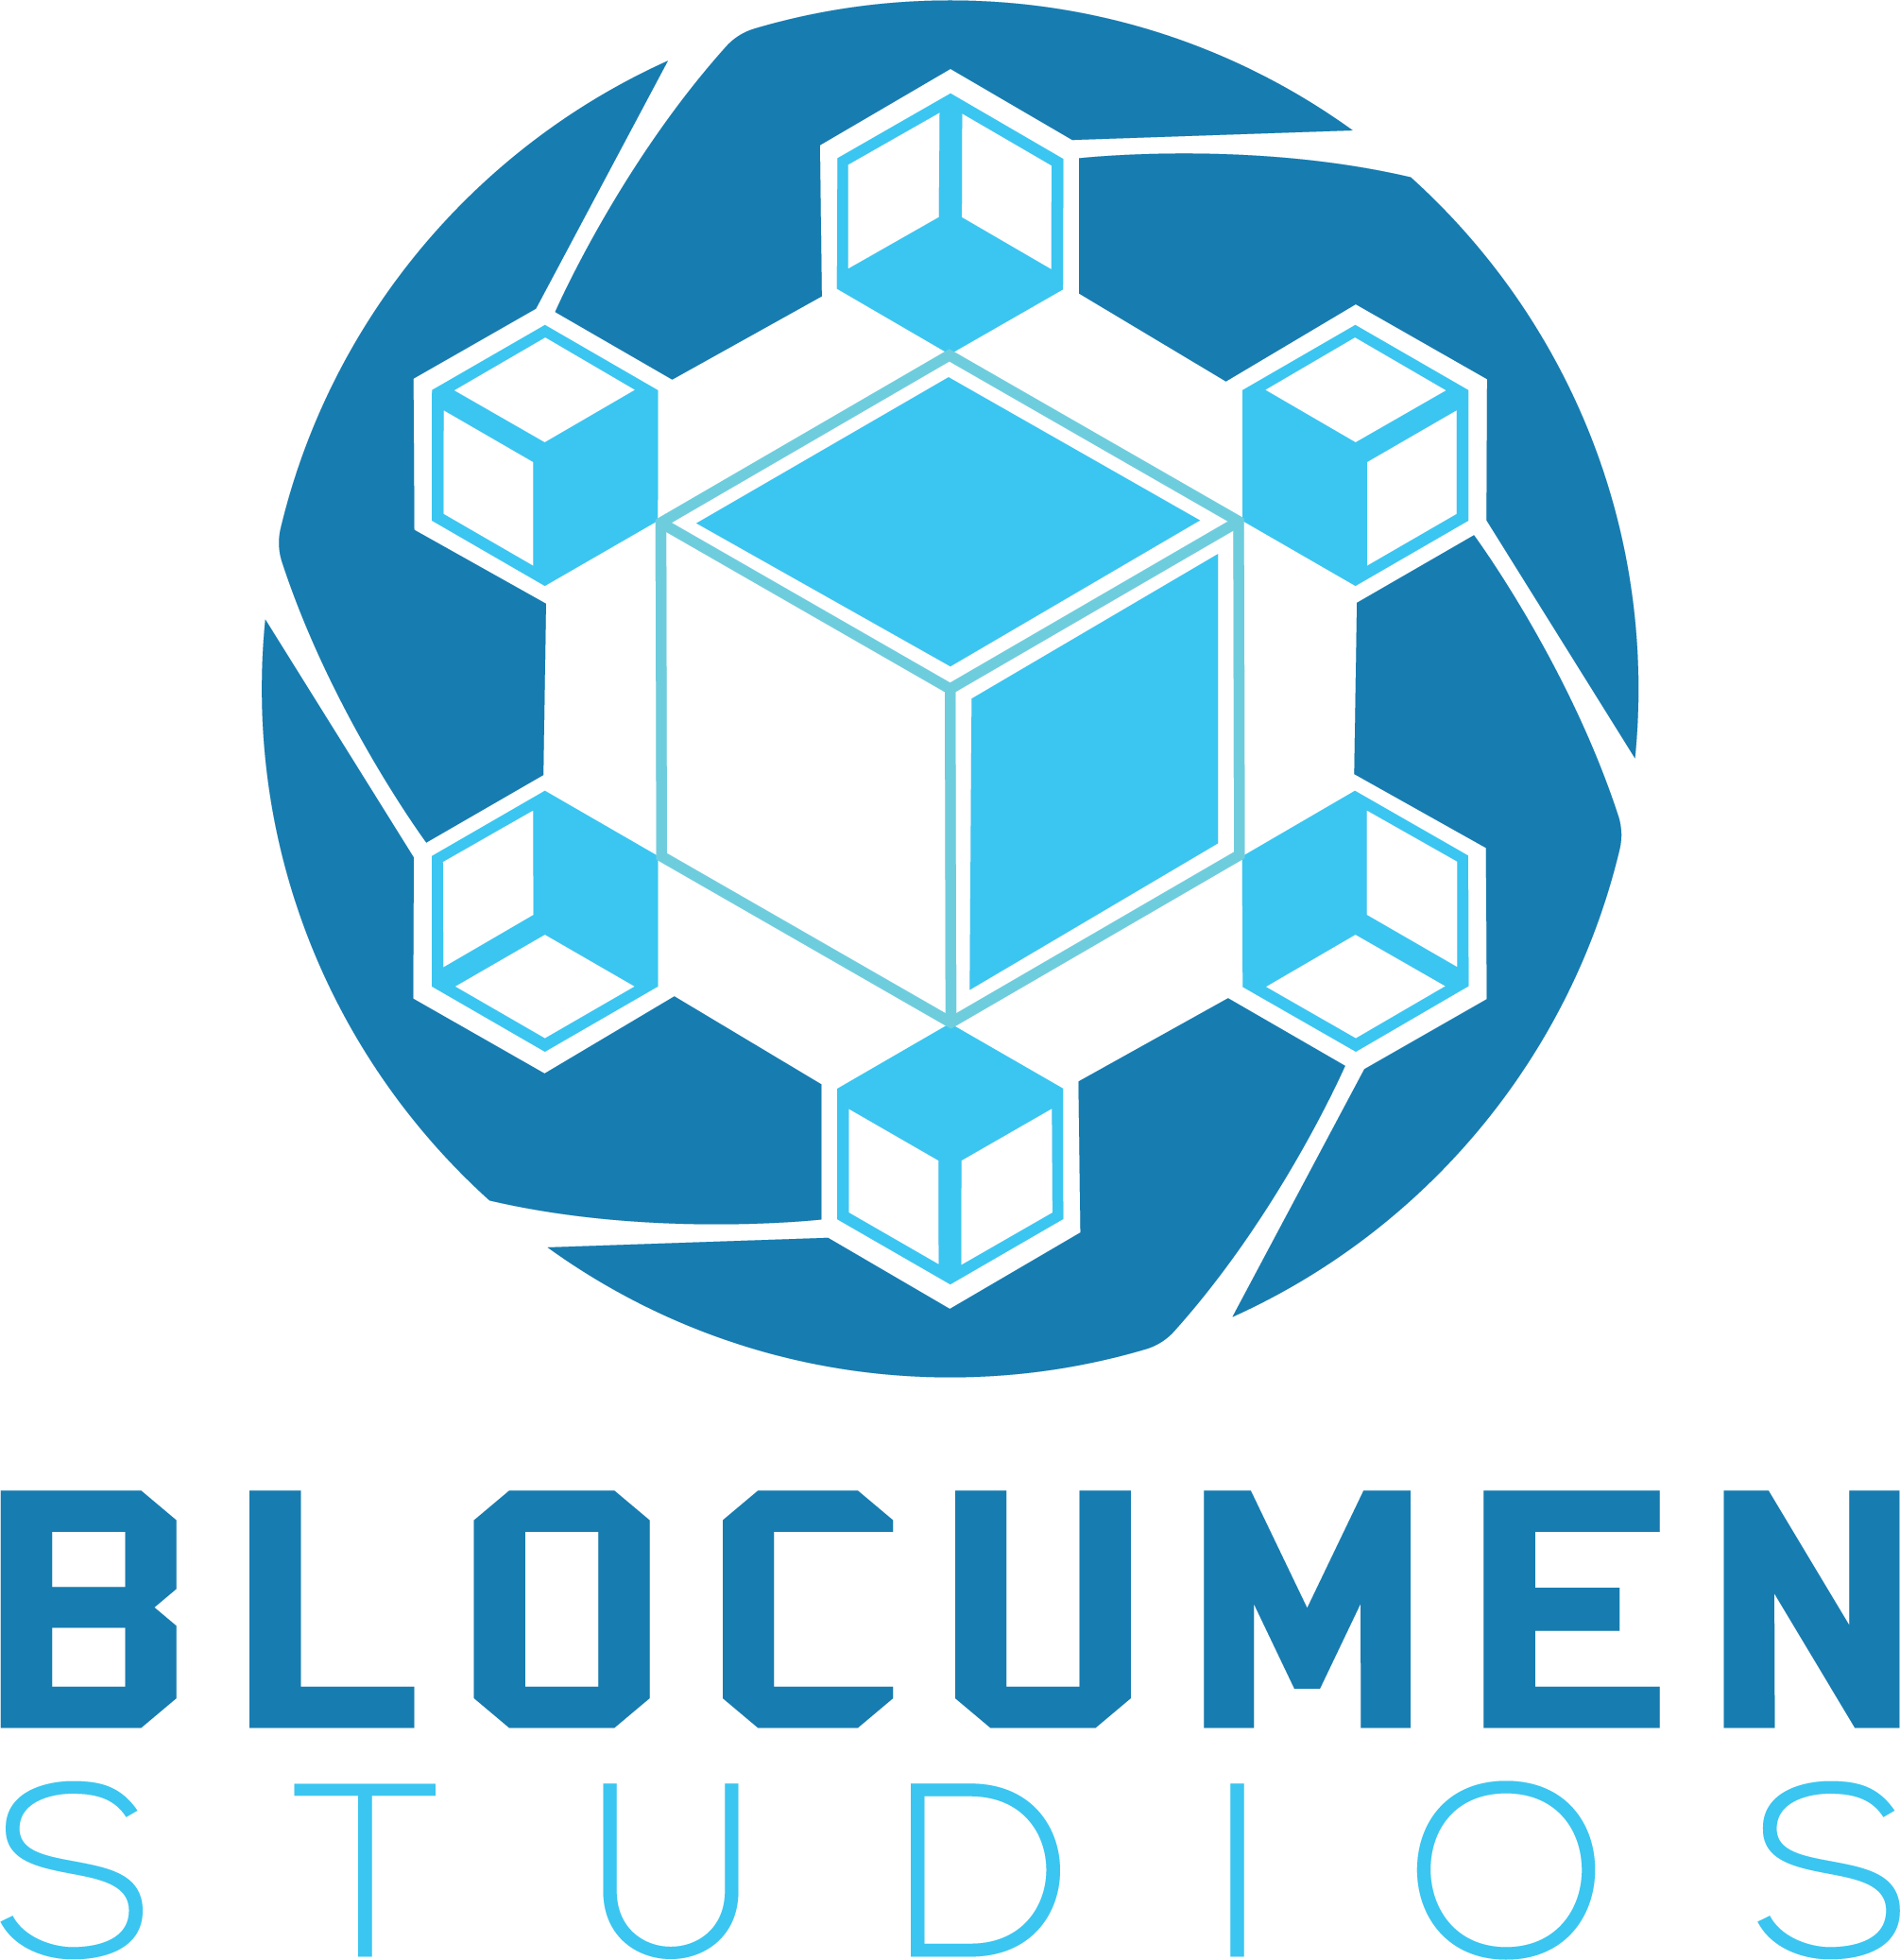 Blocumen Studios